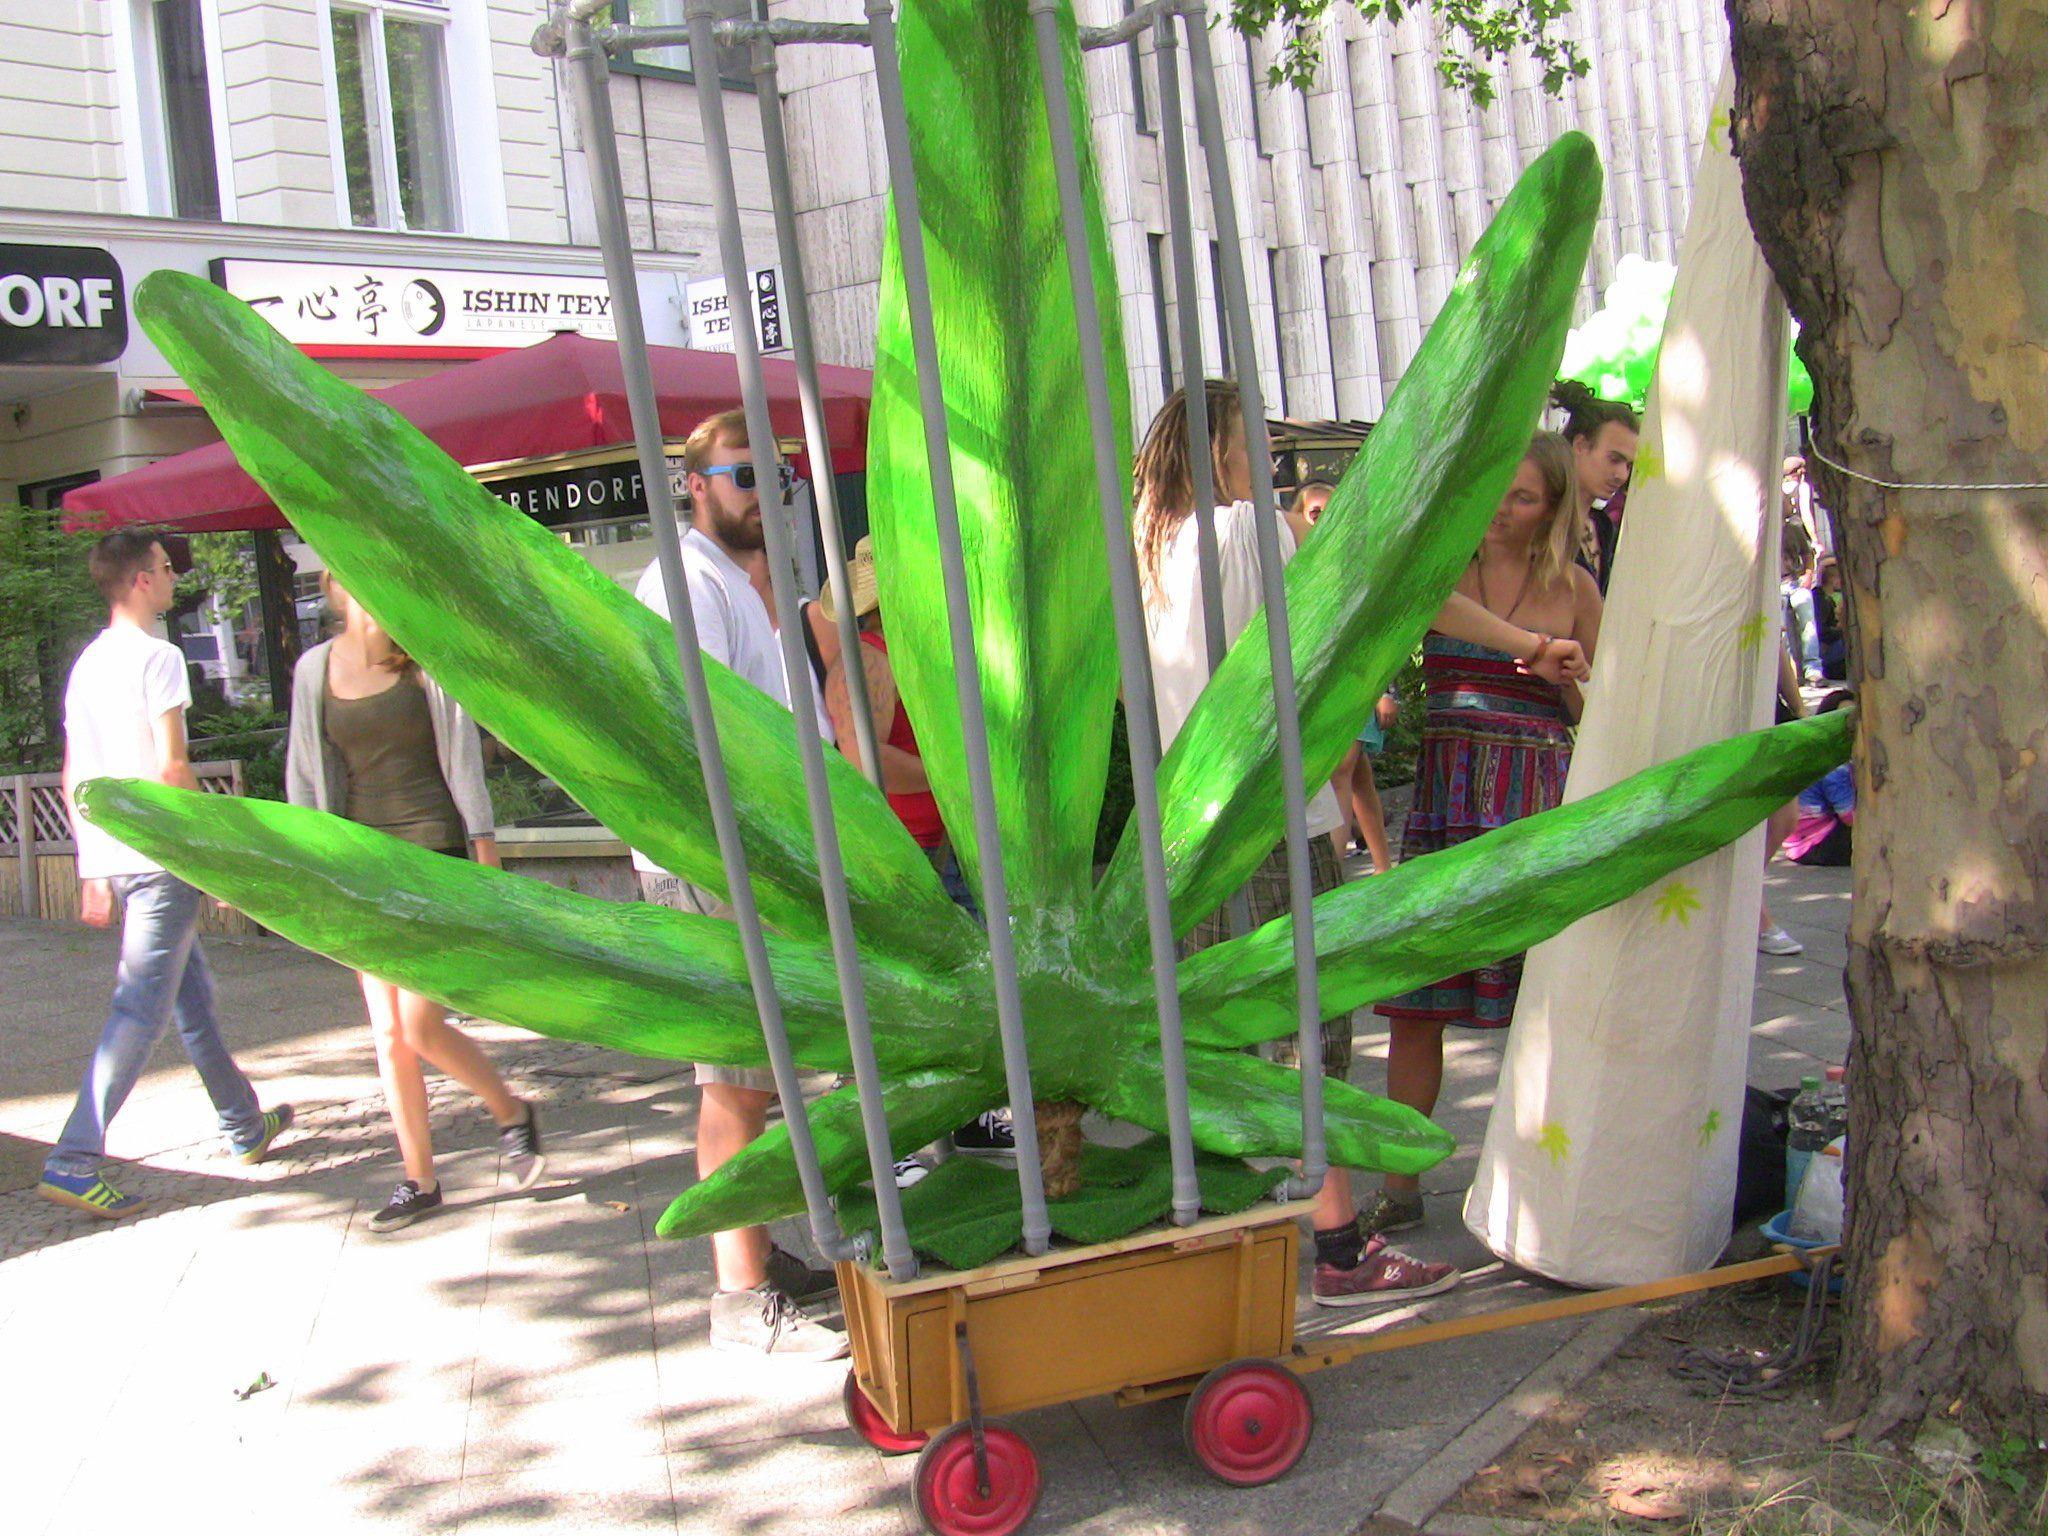 Bereits über 10.000 Unterschriften wurden für die Legalisierung von Cannabis gesammelt.